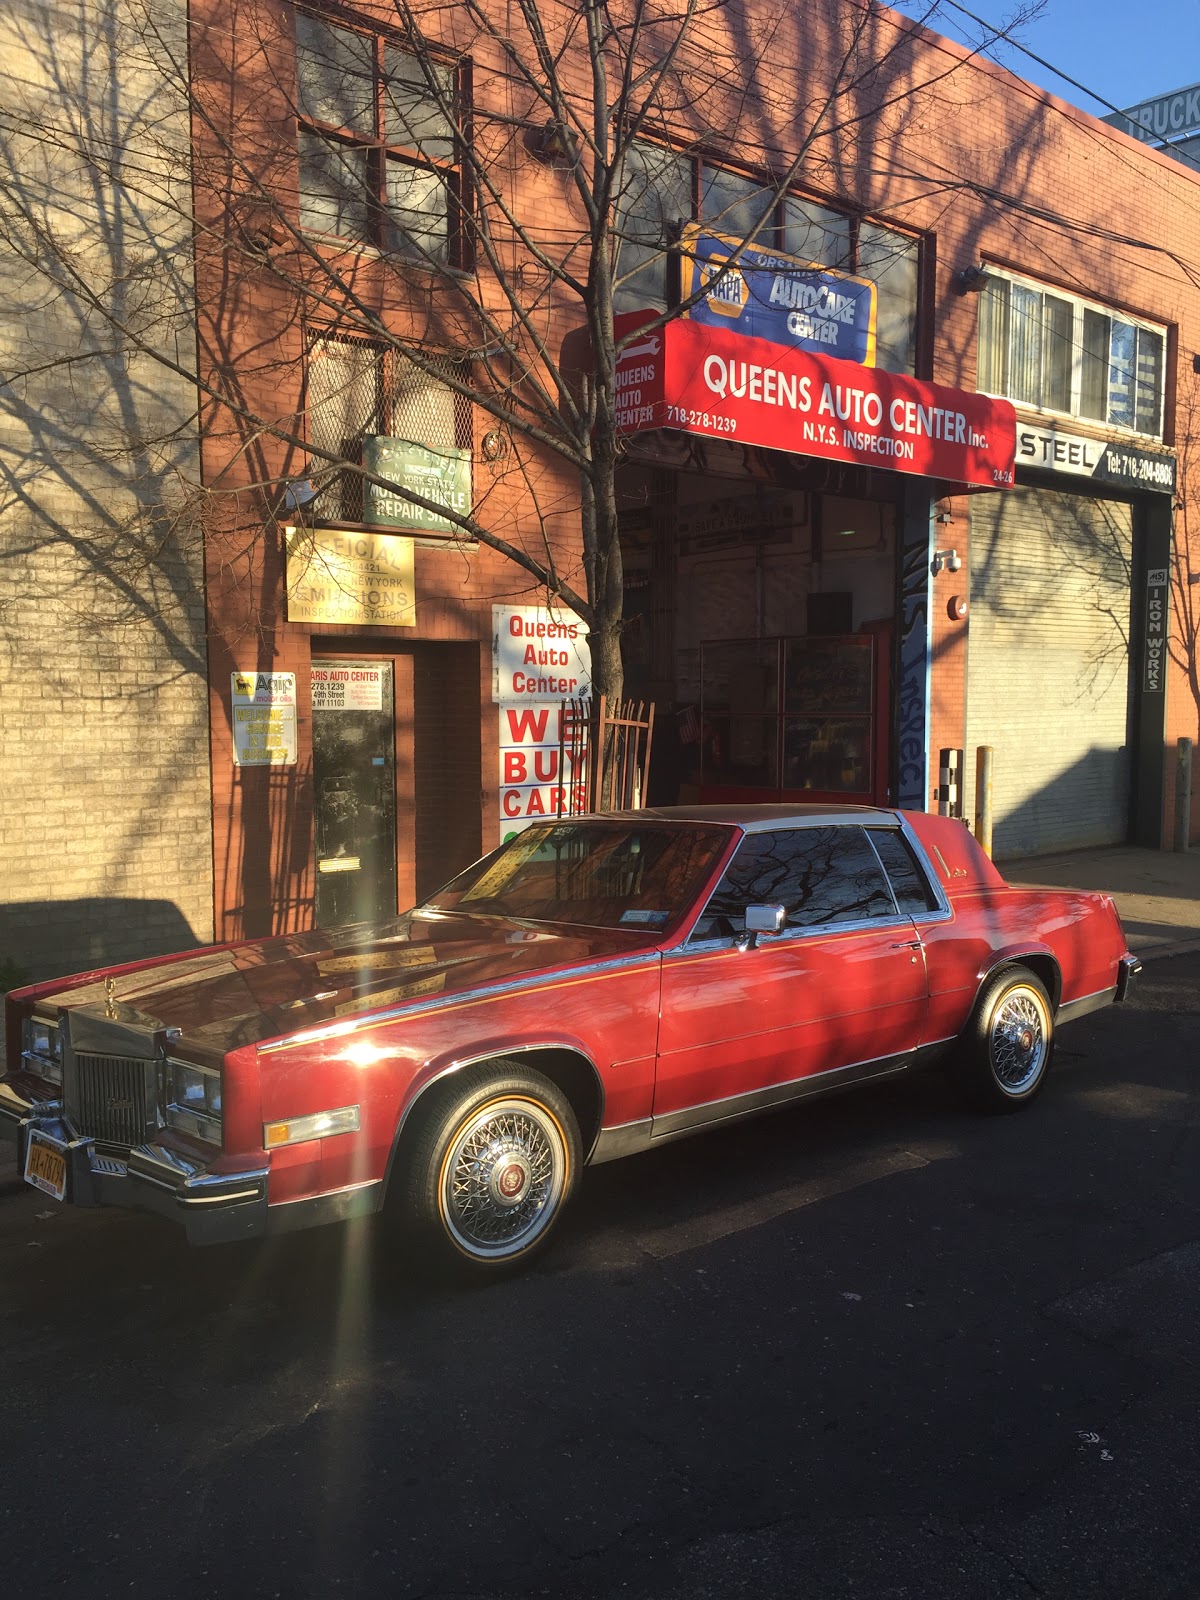 Photo of Orsaris Auto Repair in Queens City, New York, United States - 4 Picture of Point of interest, Establishment, Car repair